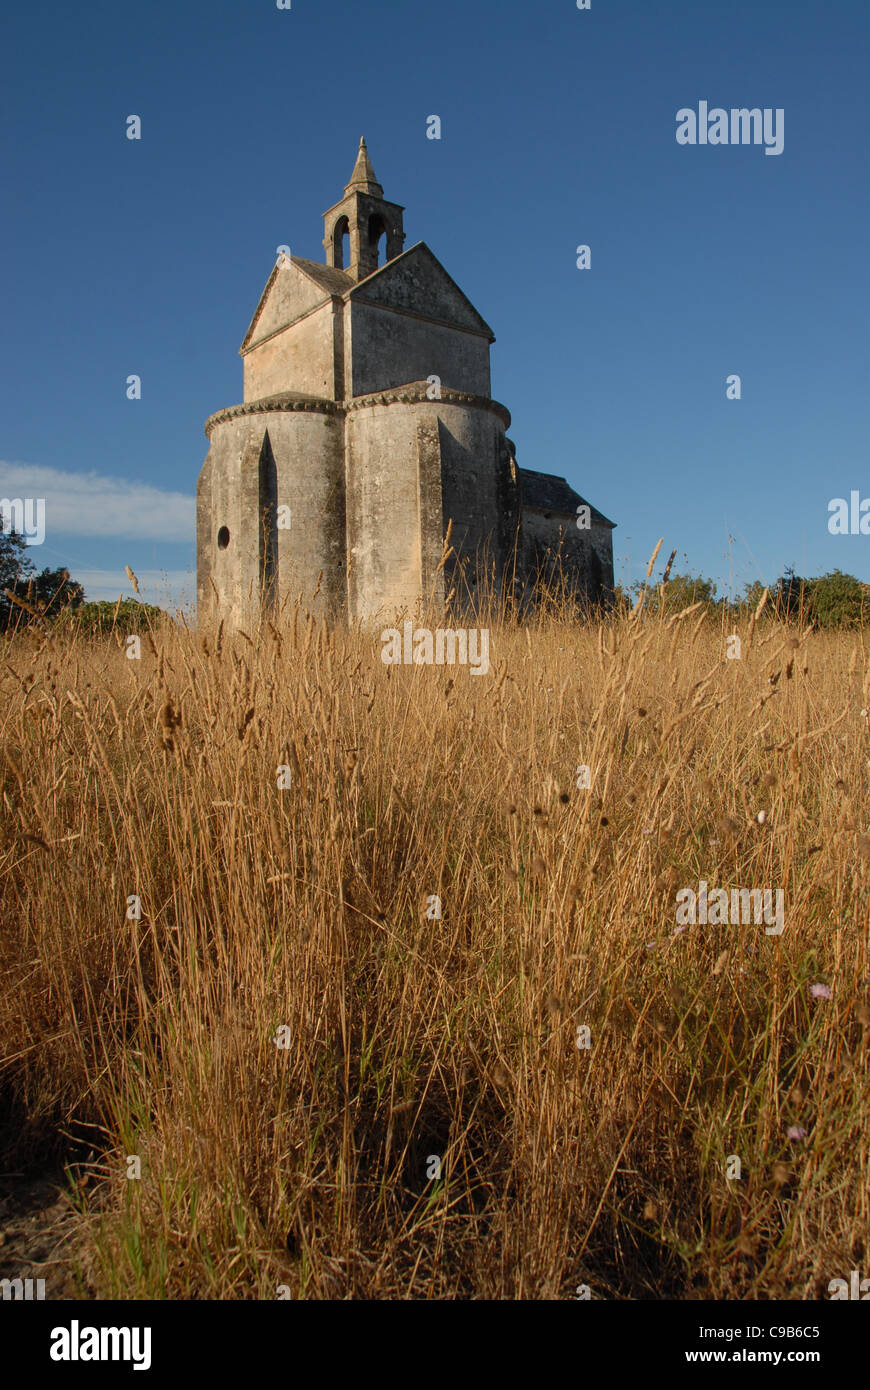 Tôt le matin, lumière sur une église pittoresque près d'Arles dans les Bouches-de-Rhône, Provence, France Banque D'Images